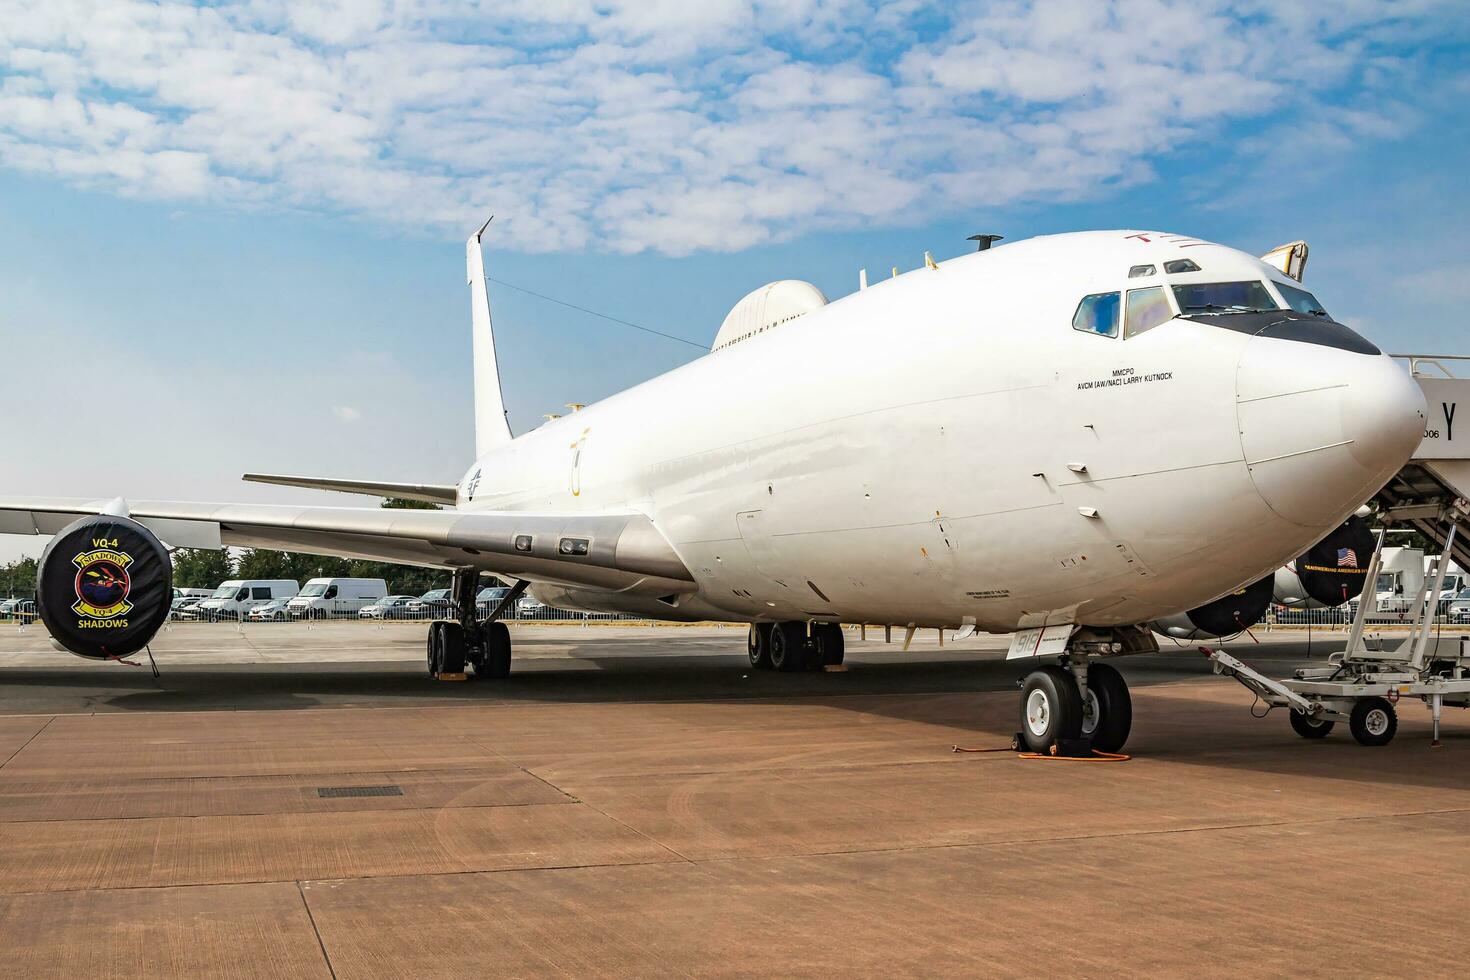 uni États marine Boeing e-6b Mercure aéroporté commander avion statique afficher à riat Royal international air tatouage 2018 salon de l'aéronautique photo